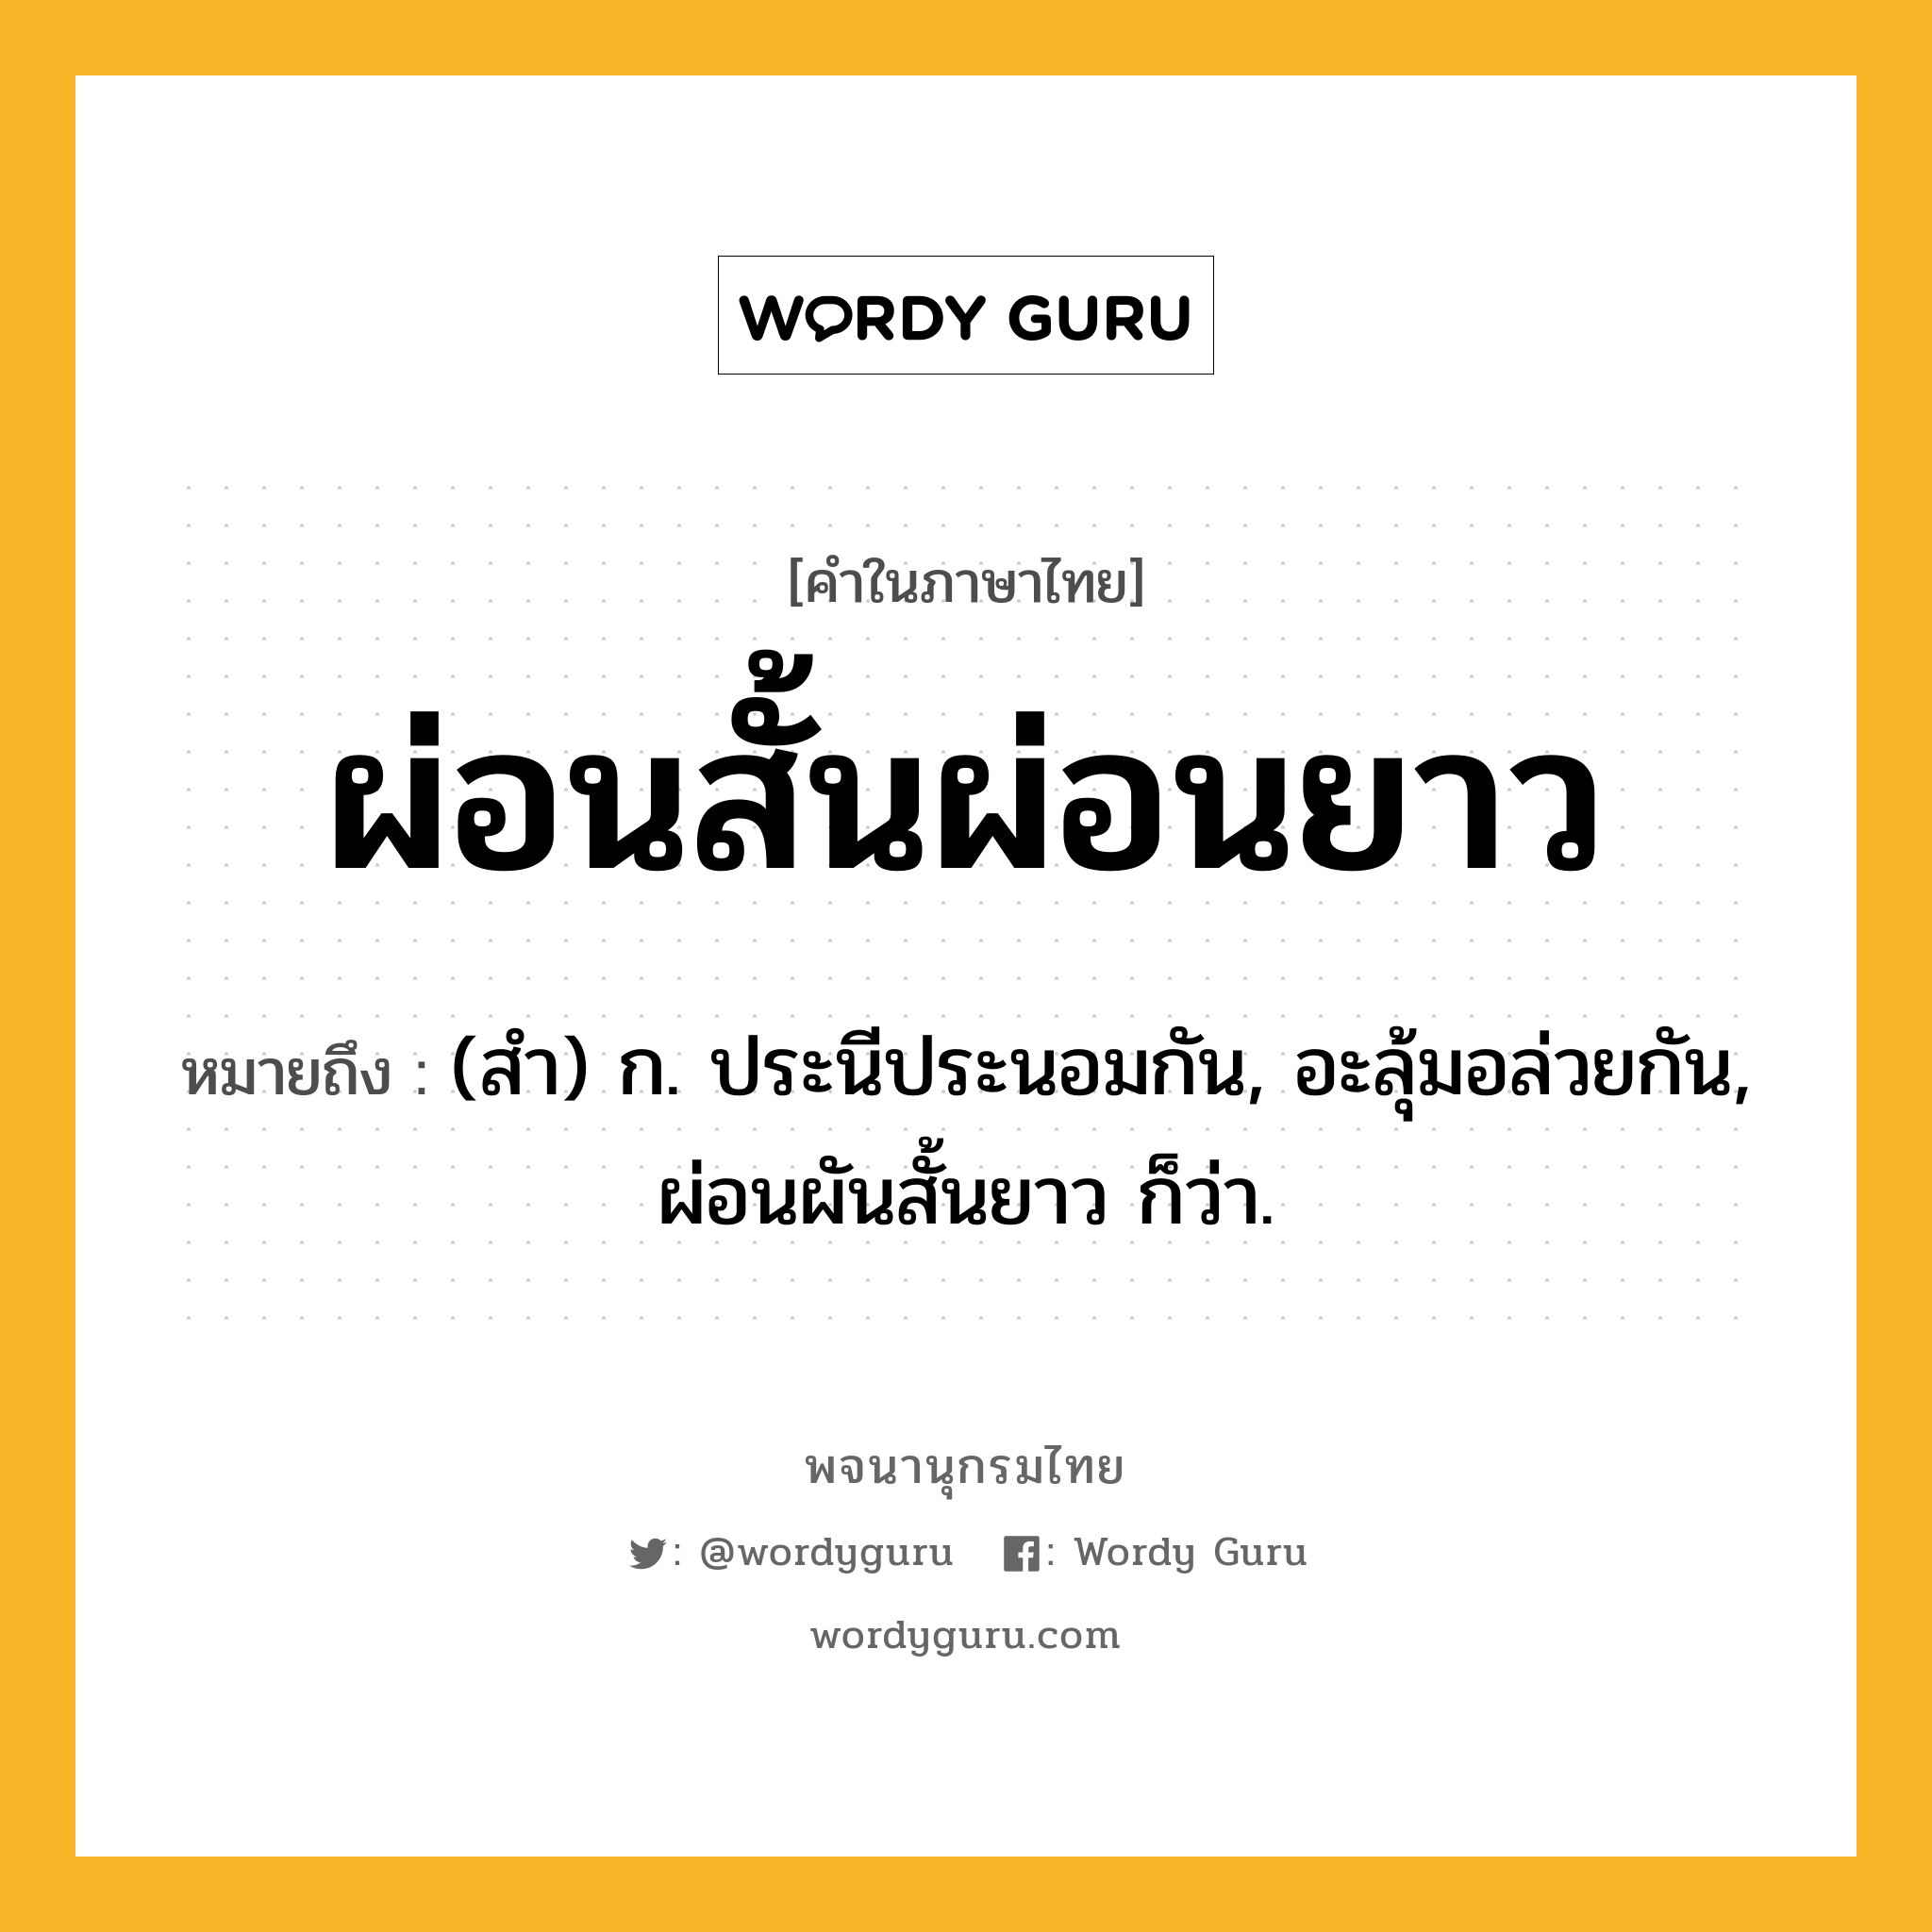 ผ่อนสั้นผ่อนยาว ความหมาย หมายถึงอะไร?, คำในภาษาไทย ผ่อนสั้นผ่อนยาว หมายถึง (สํา) ก. ประนีประนอมกัน, อะลุ้มอล่วยกัน, ผ่อนผันสั้นยาว ก็ว่า.